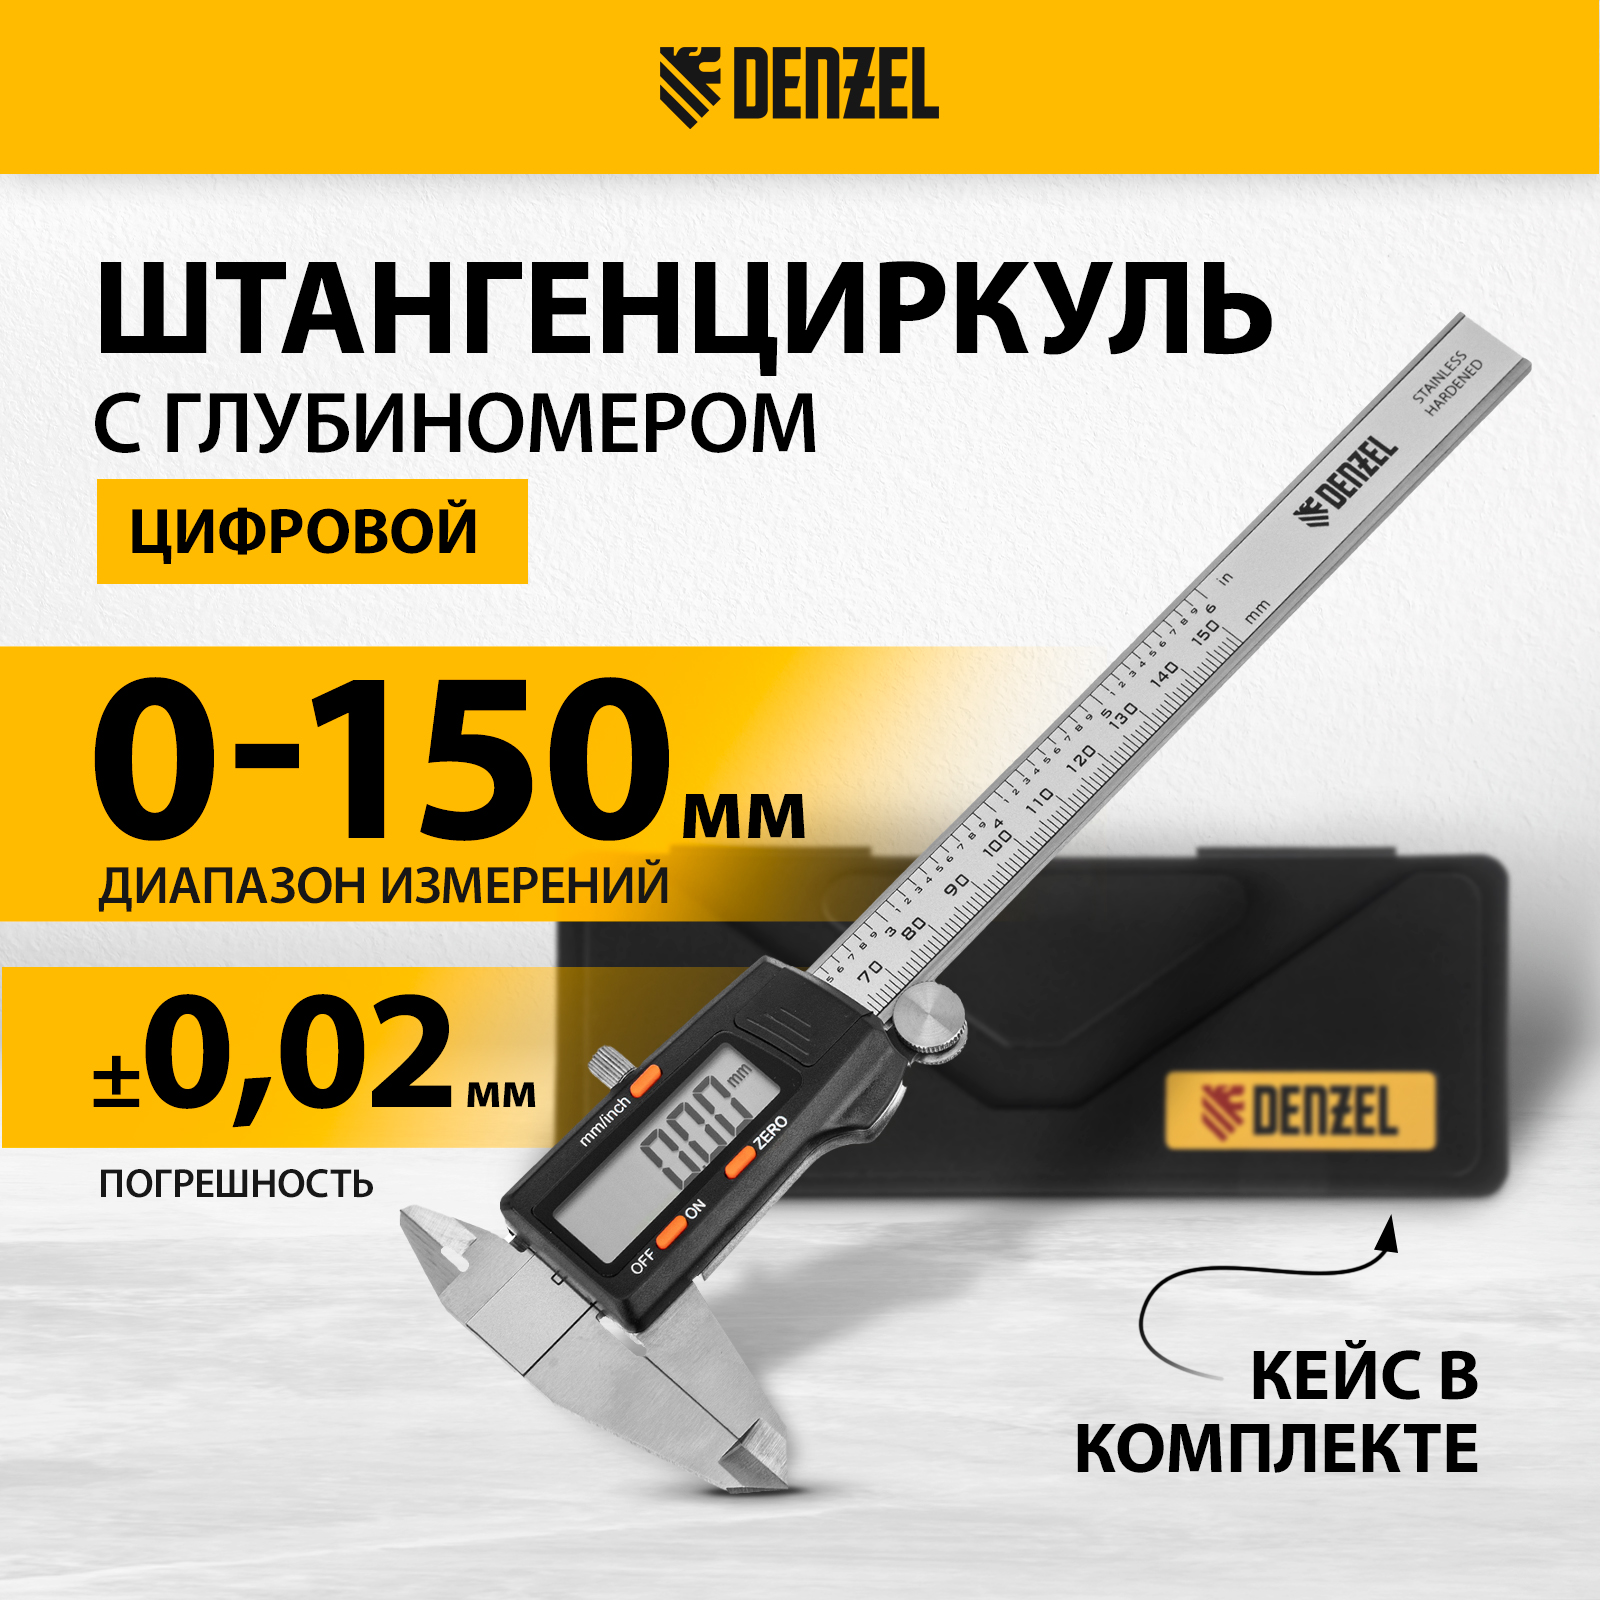 Штангенциркуль DENZEL 150 мм электронный, с глубиномером 31613 штангенциркуль электронный с колумбусом skrab